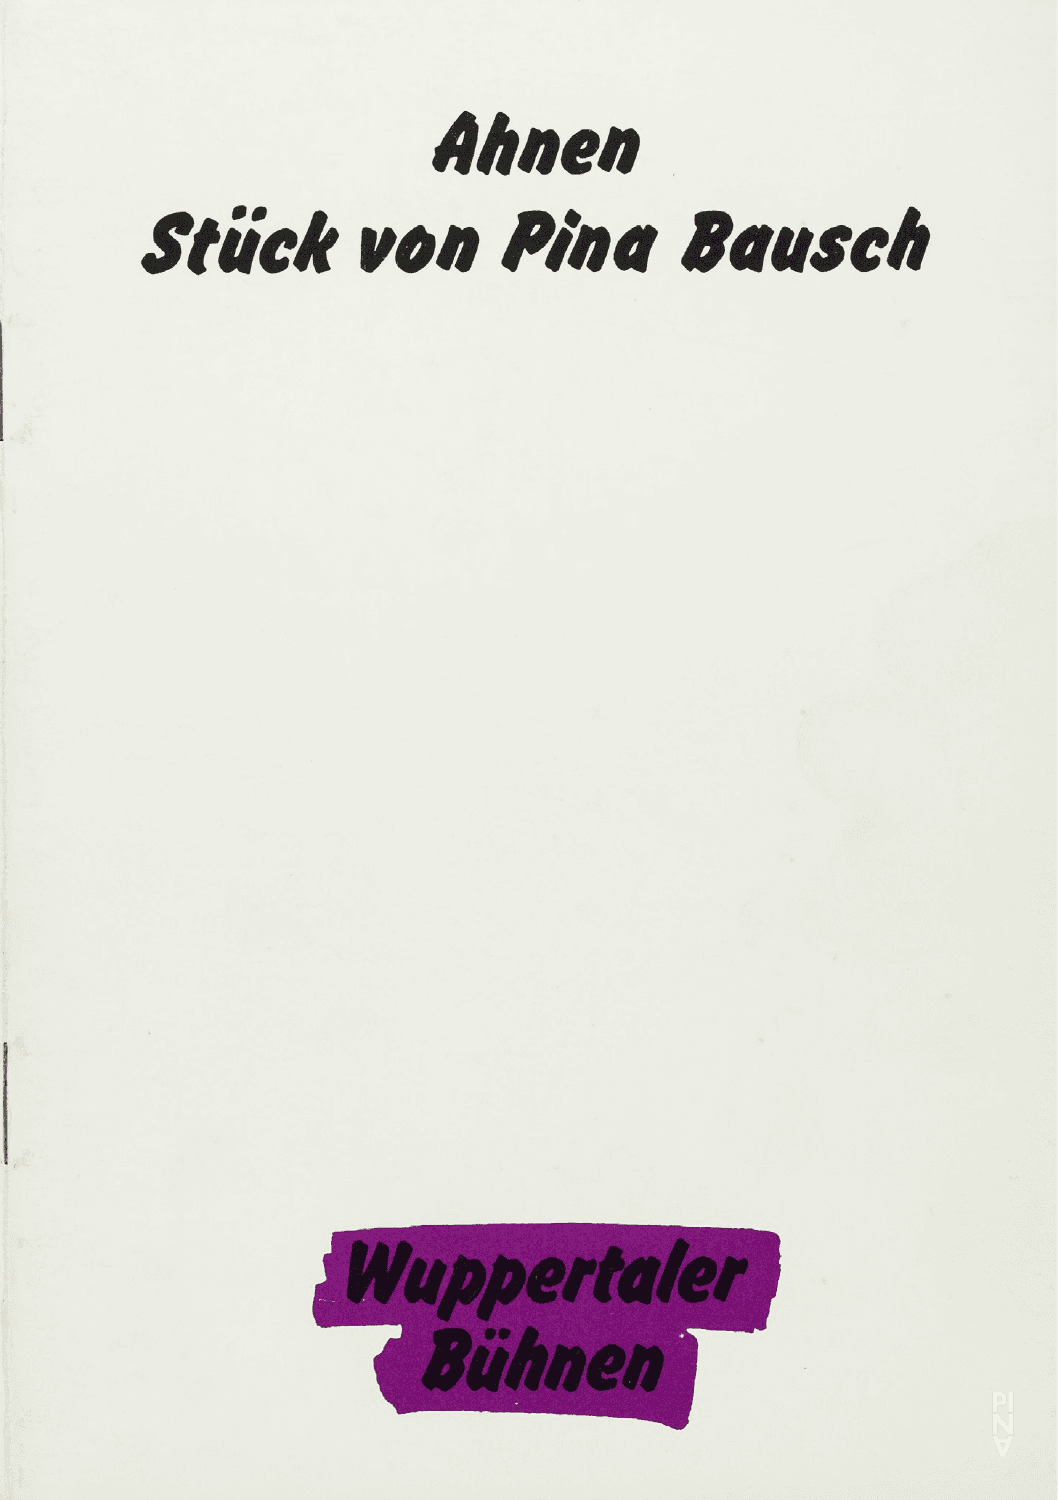 Programmheft zu „Ahnen“ von Pina Bausch mit Tanztheater Wuppertal in Wuppertal, 21. März 1987